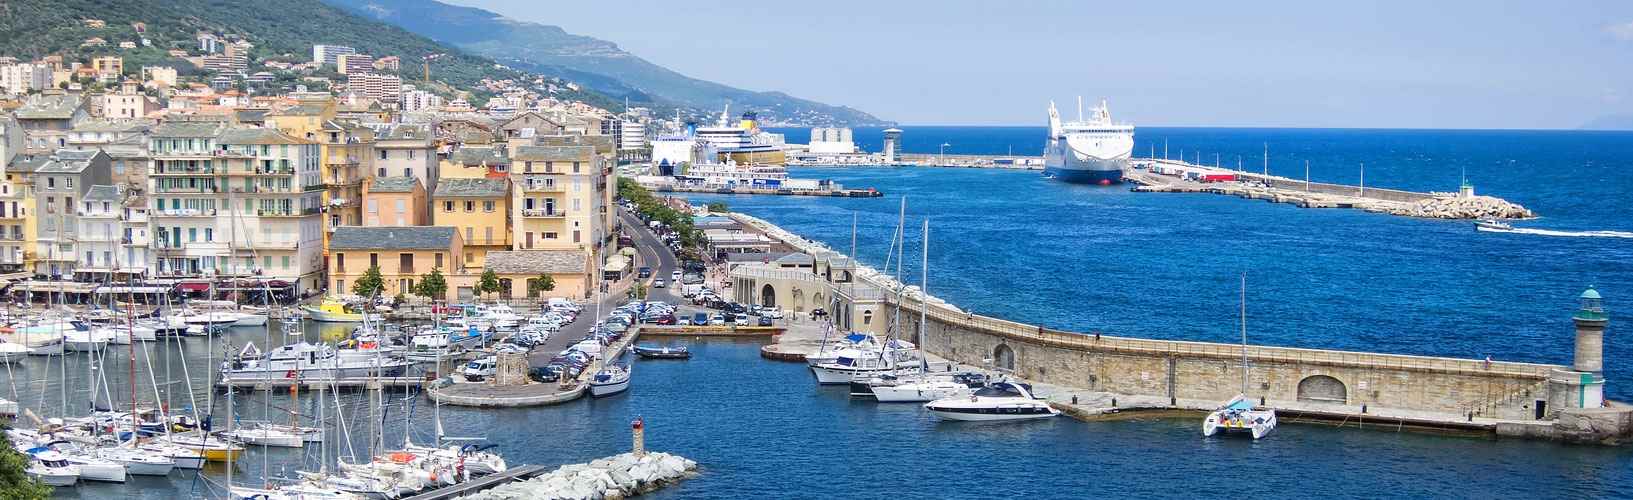 Bastia, Corsica: the port